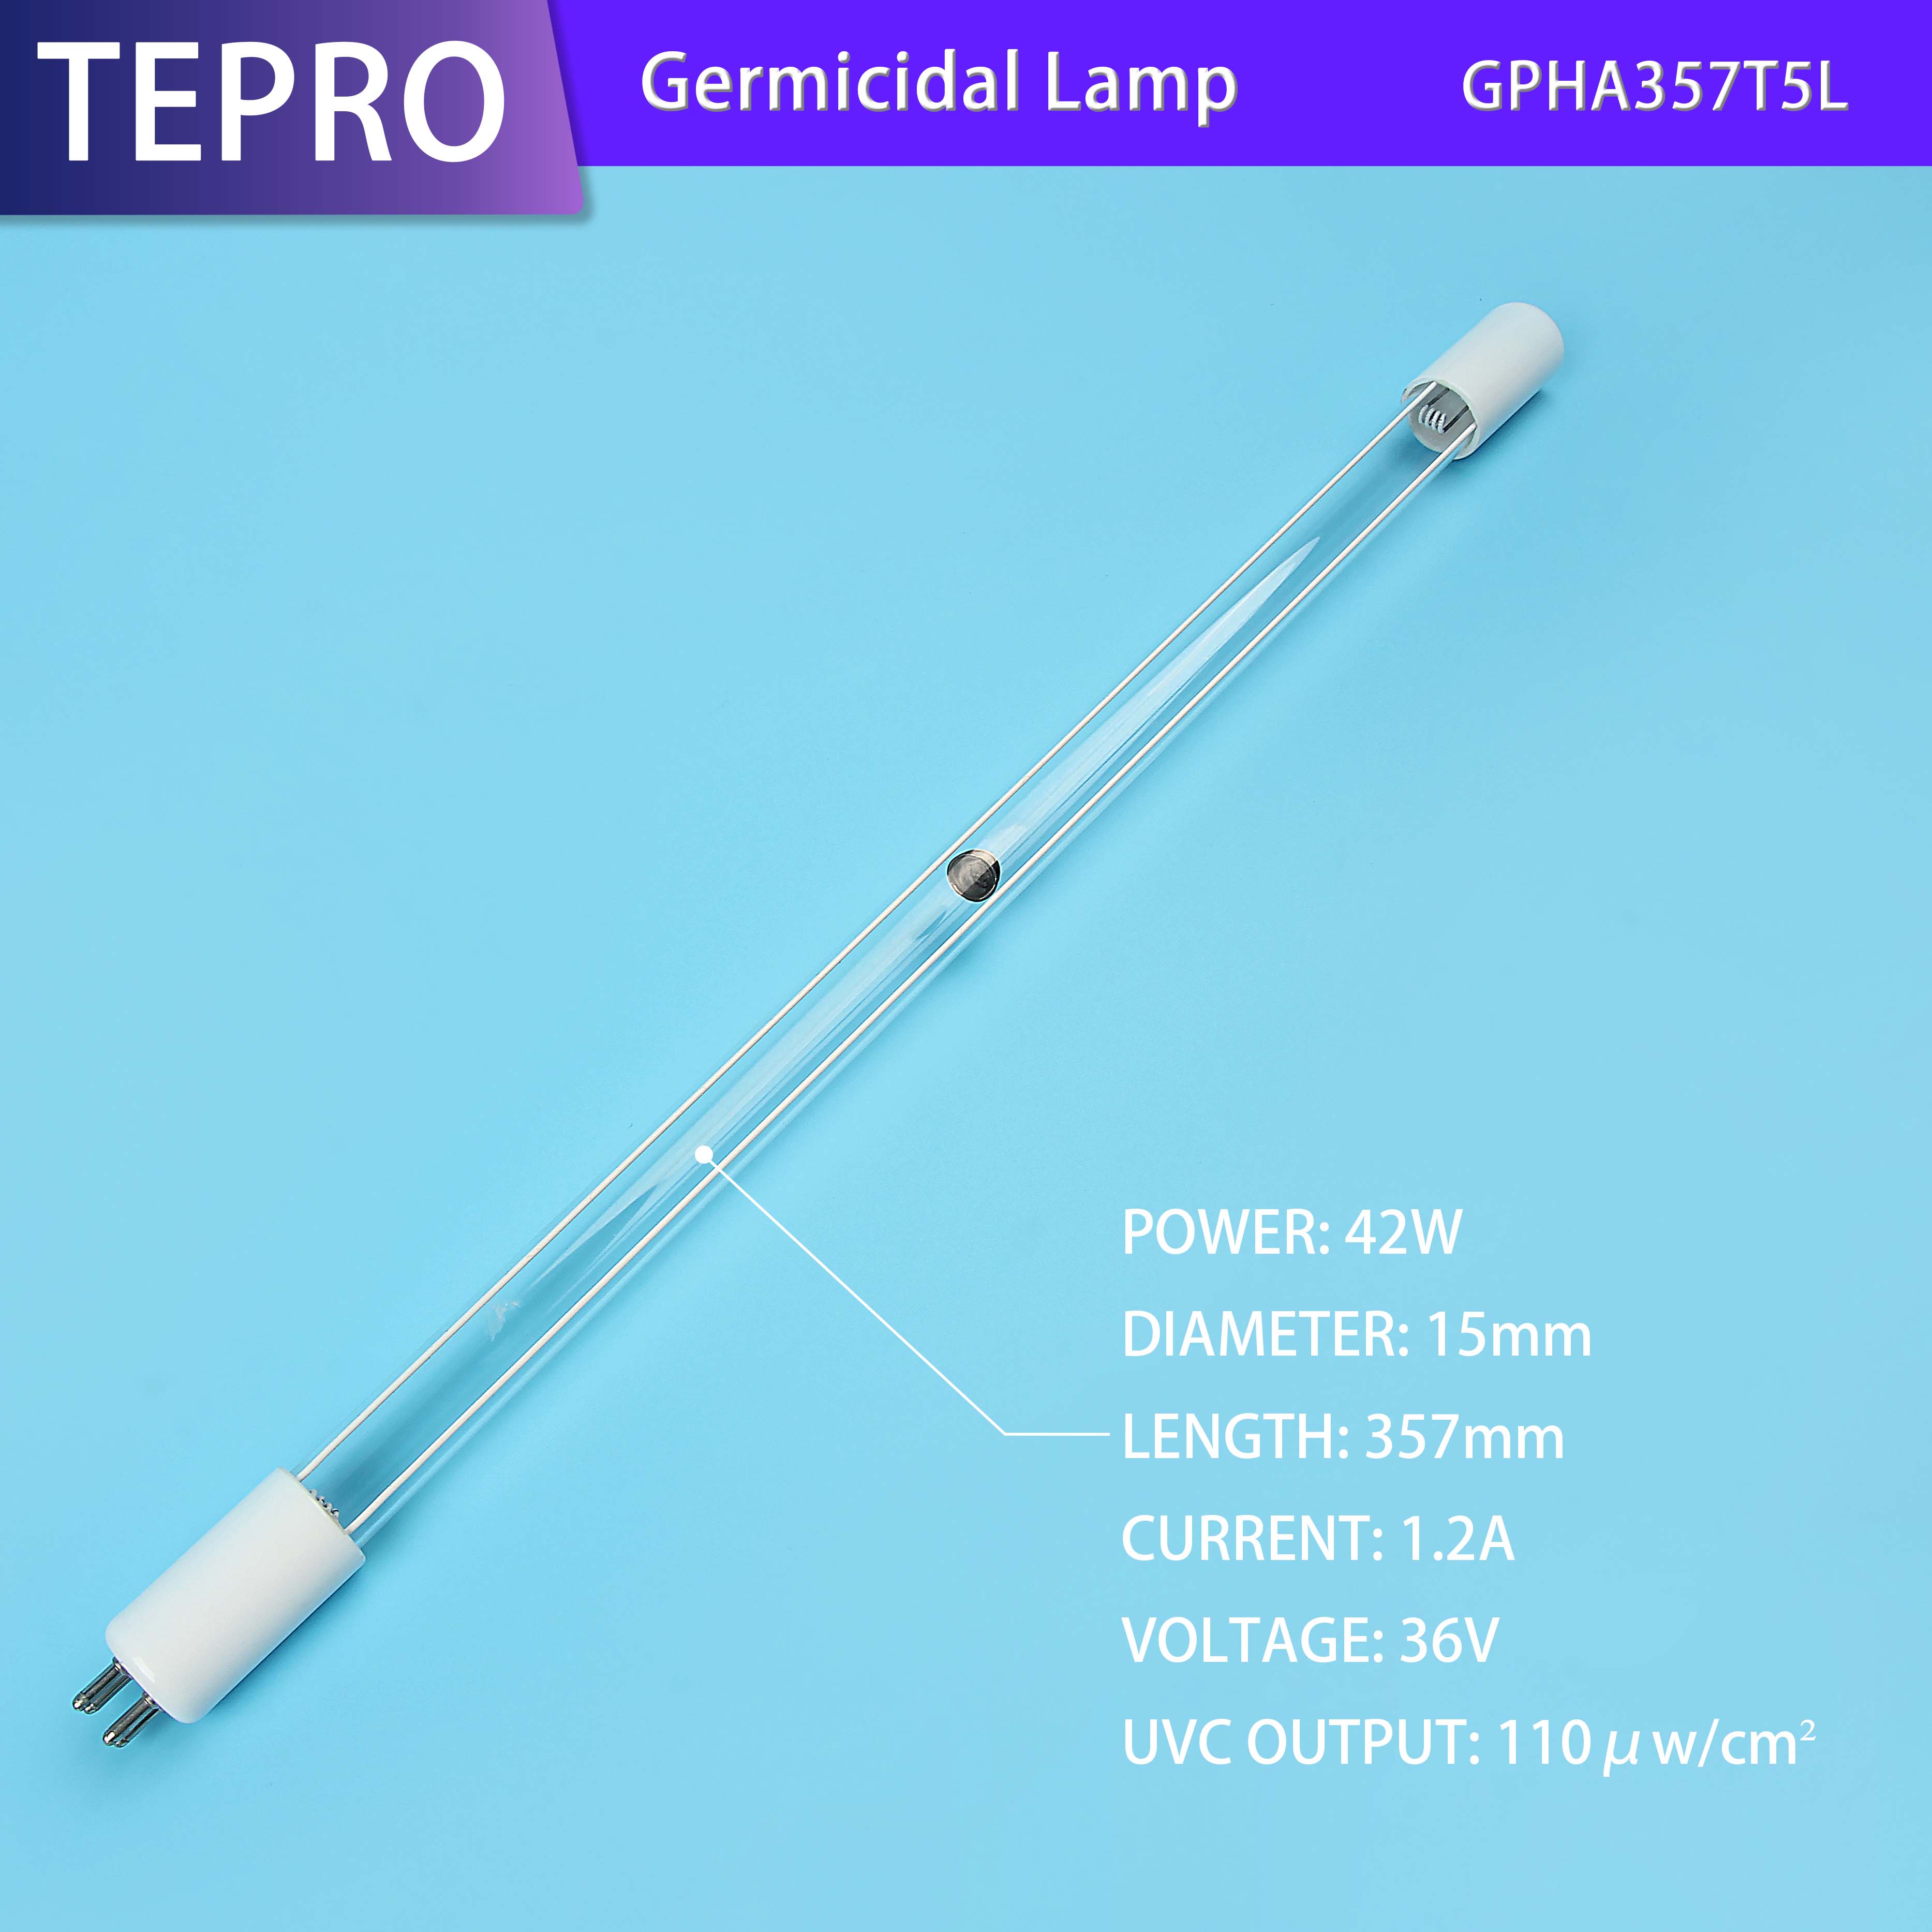 High power high output 57W amalgam UV Lamp GPHA357T6L